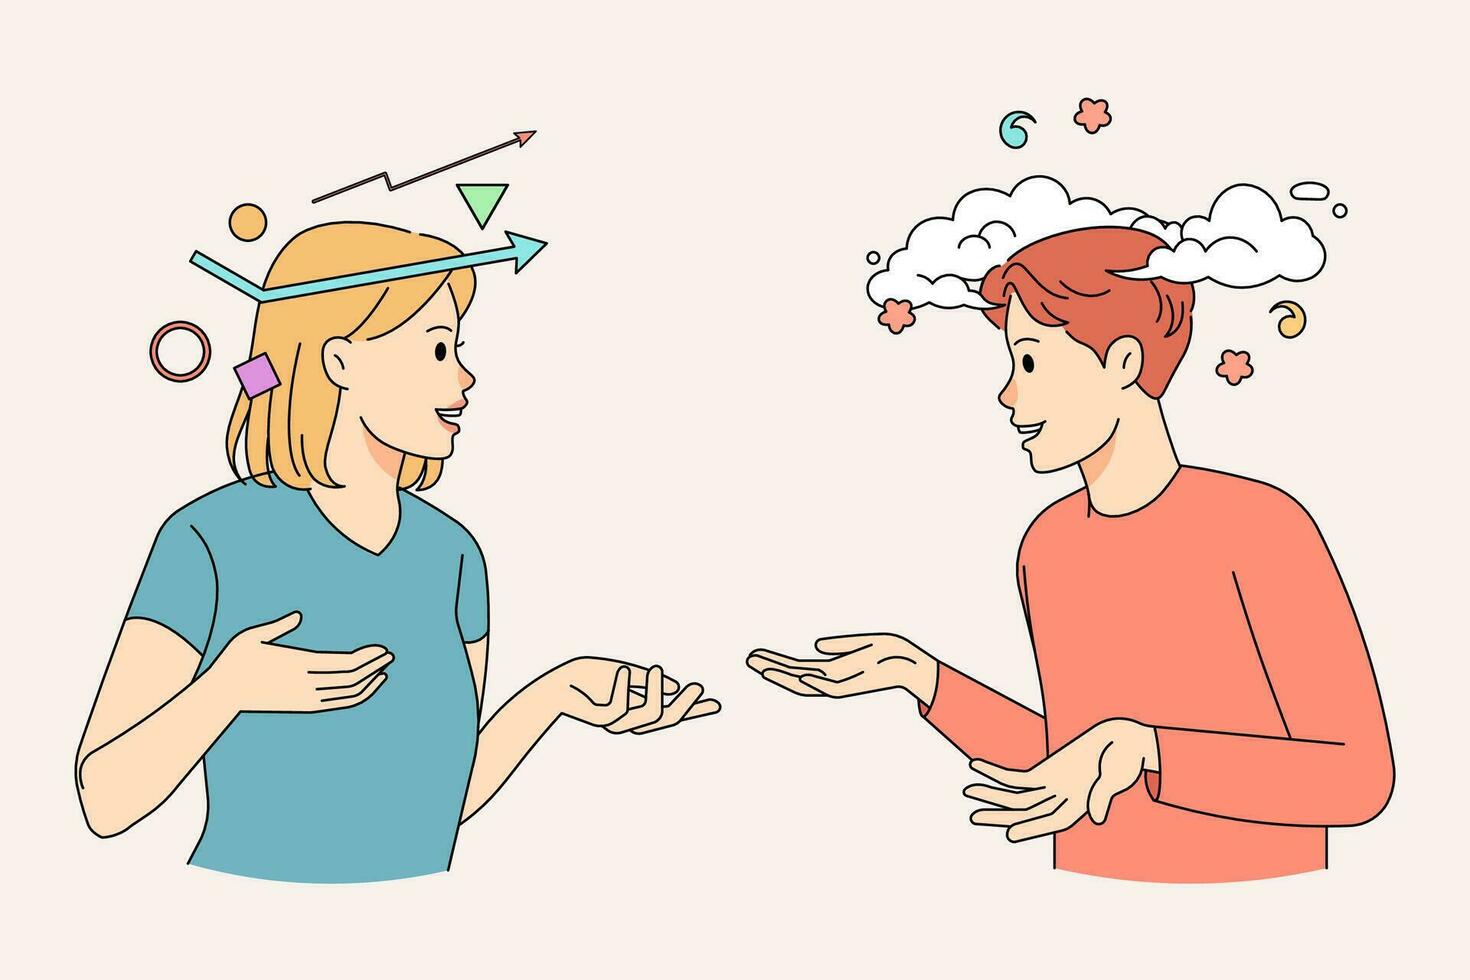 olika människor med logisk analytisk sinne prata kommunicera med fantasifull kreativ attityd. man och kvinna med annorlunda tänkande ha chatt eller kommunikation. vektor illustration.